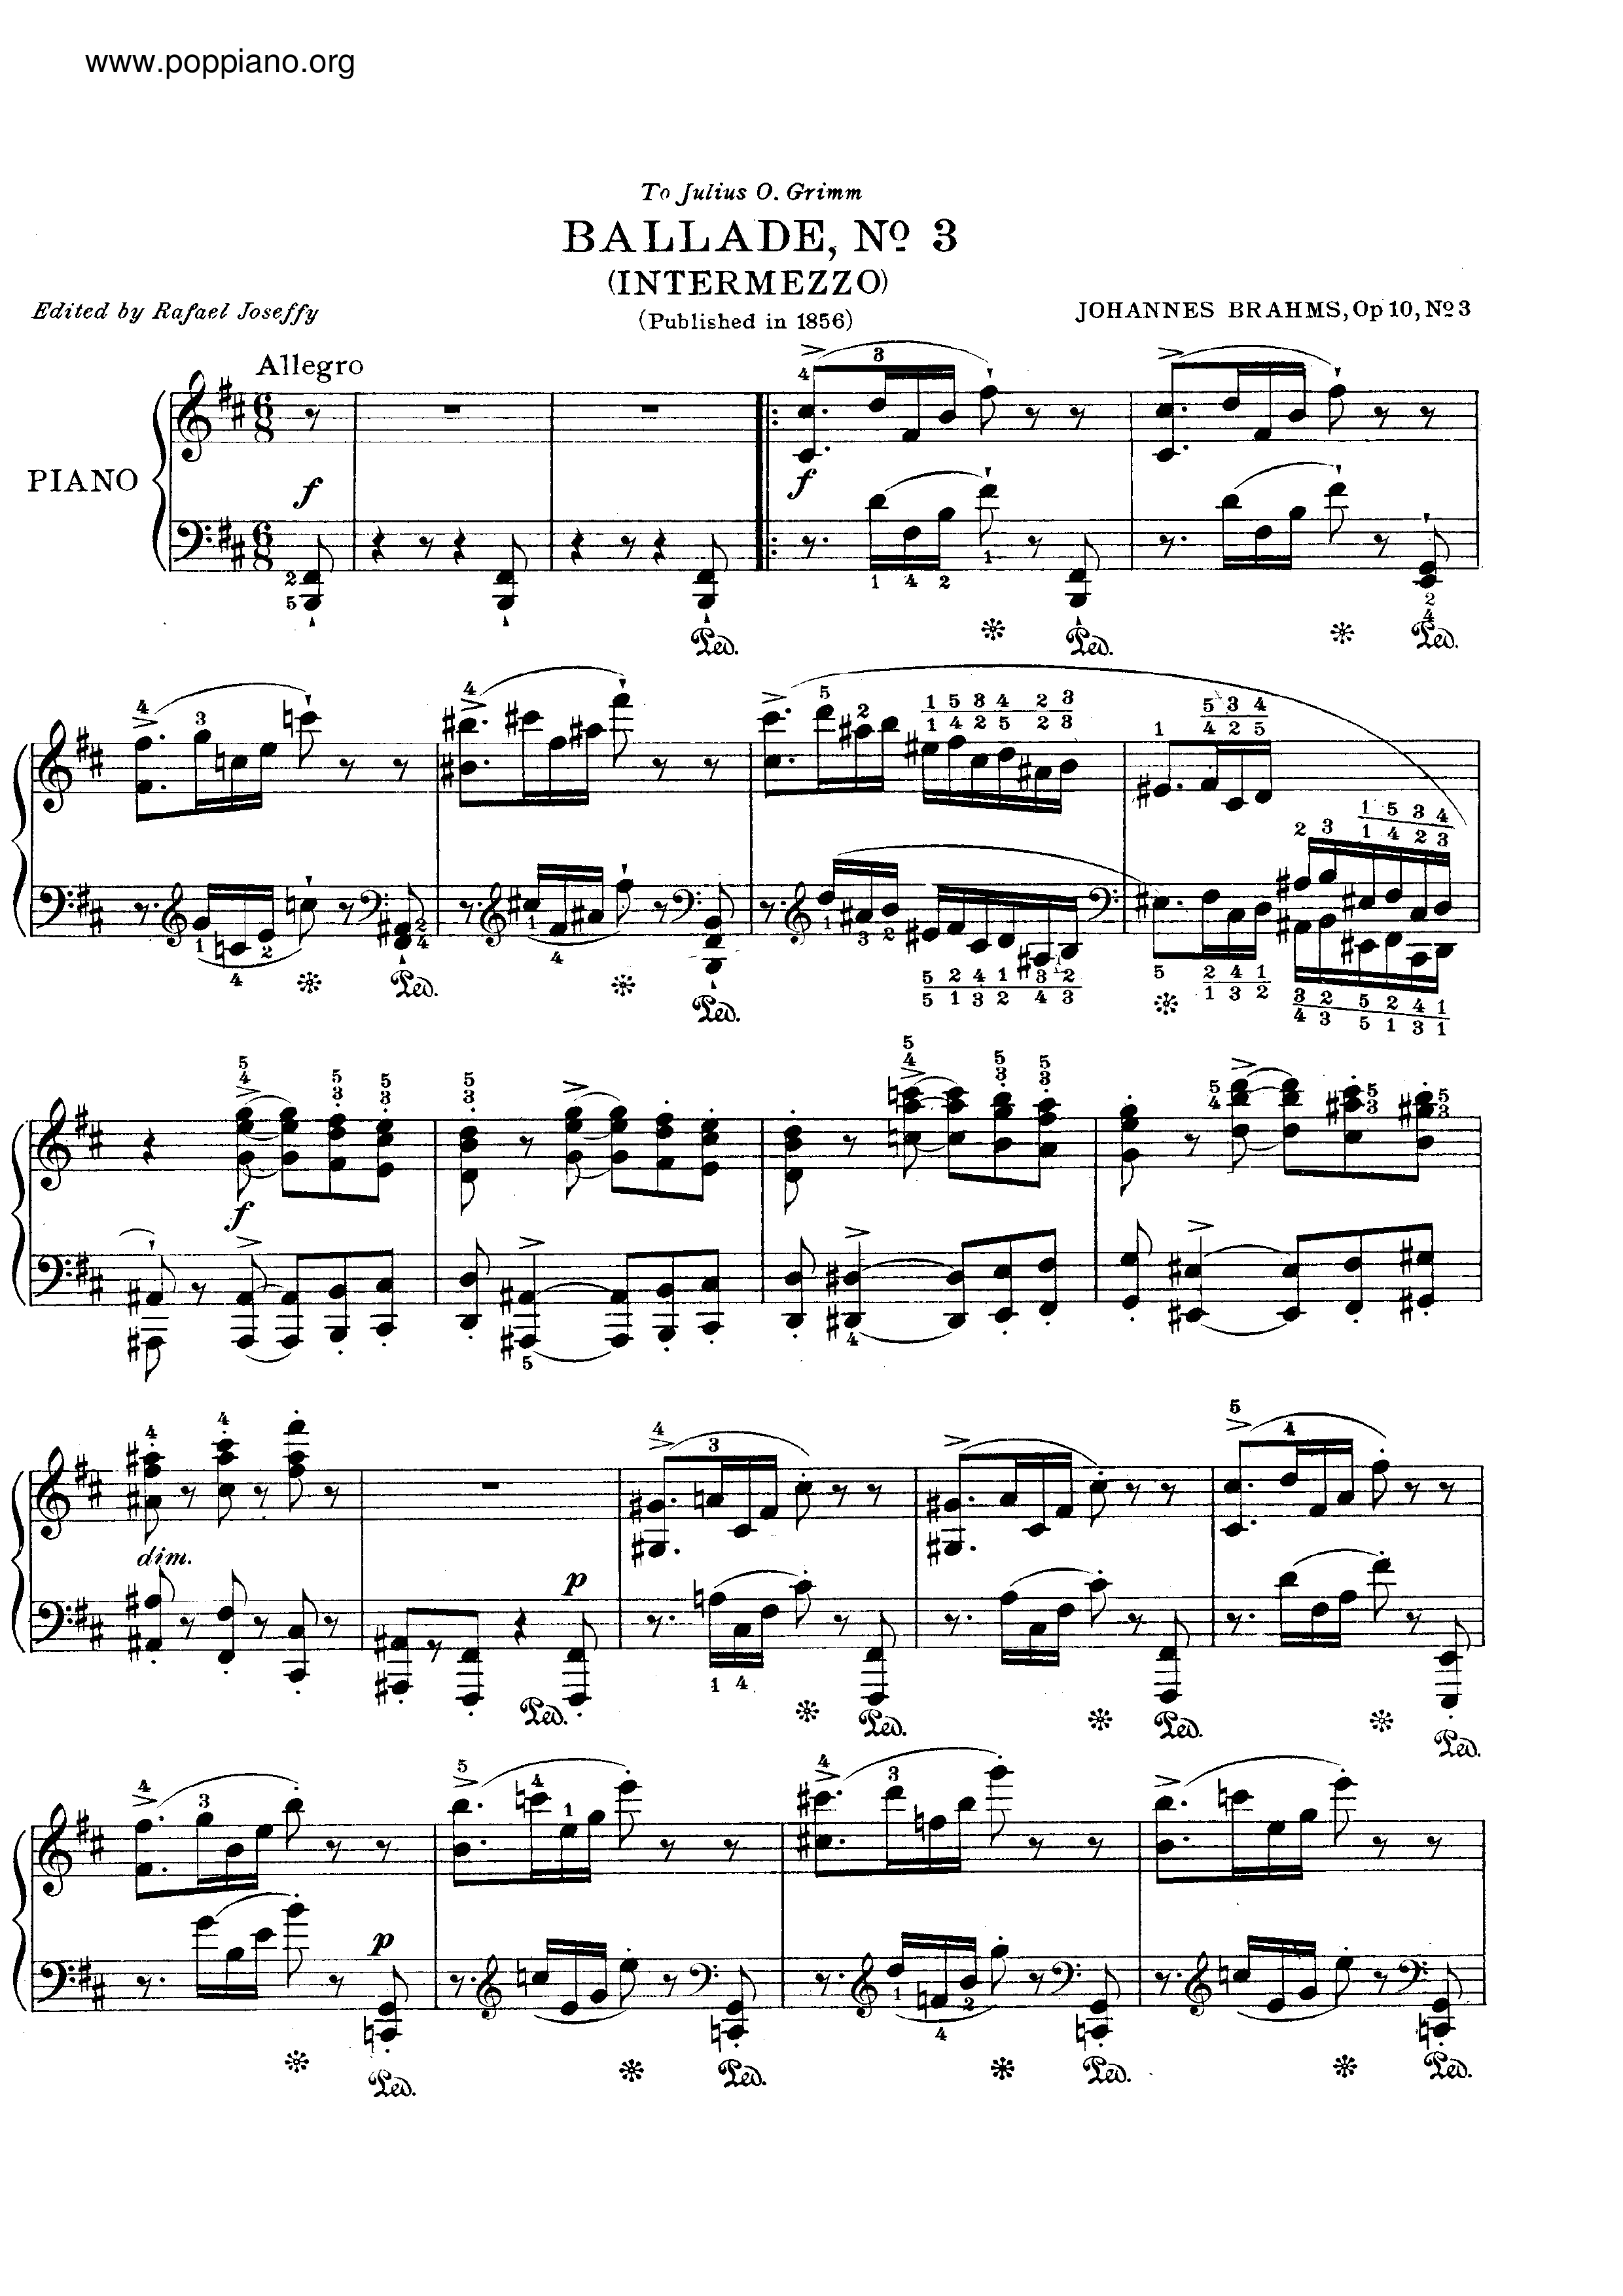 No. 3 in B minor. Intermezzo. Allegroピアノ譜